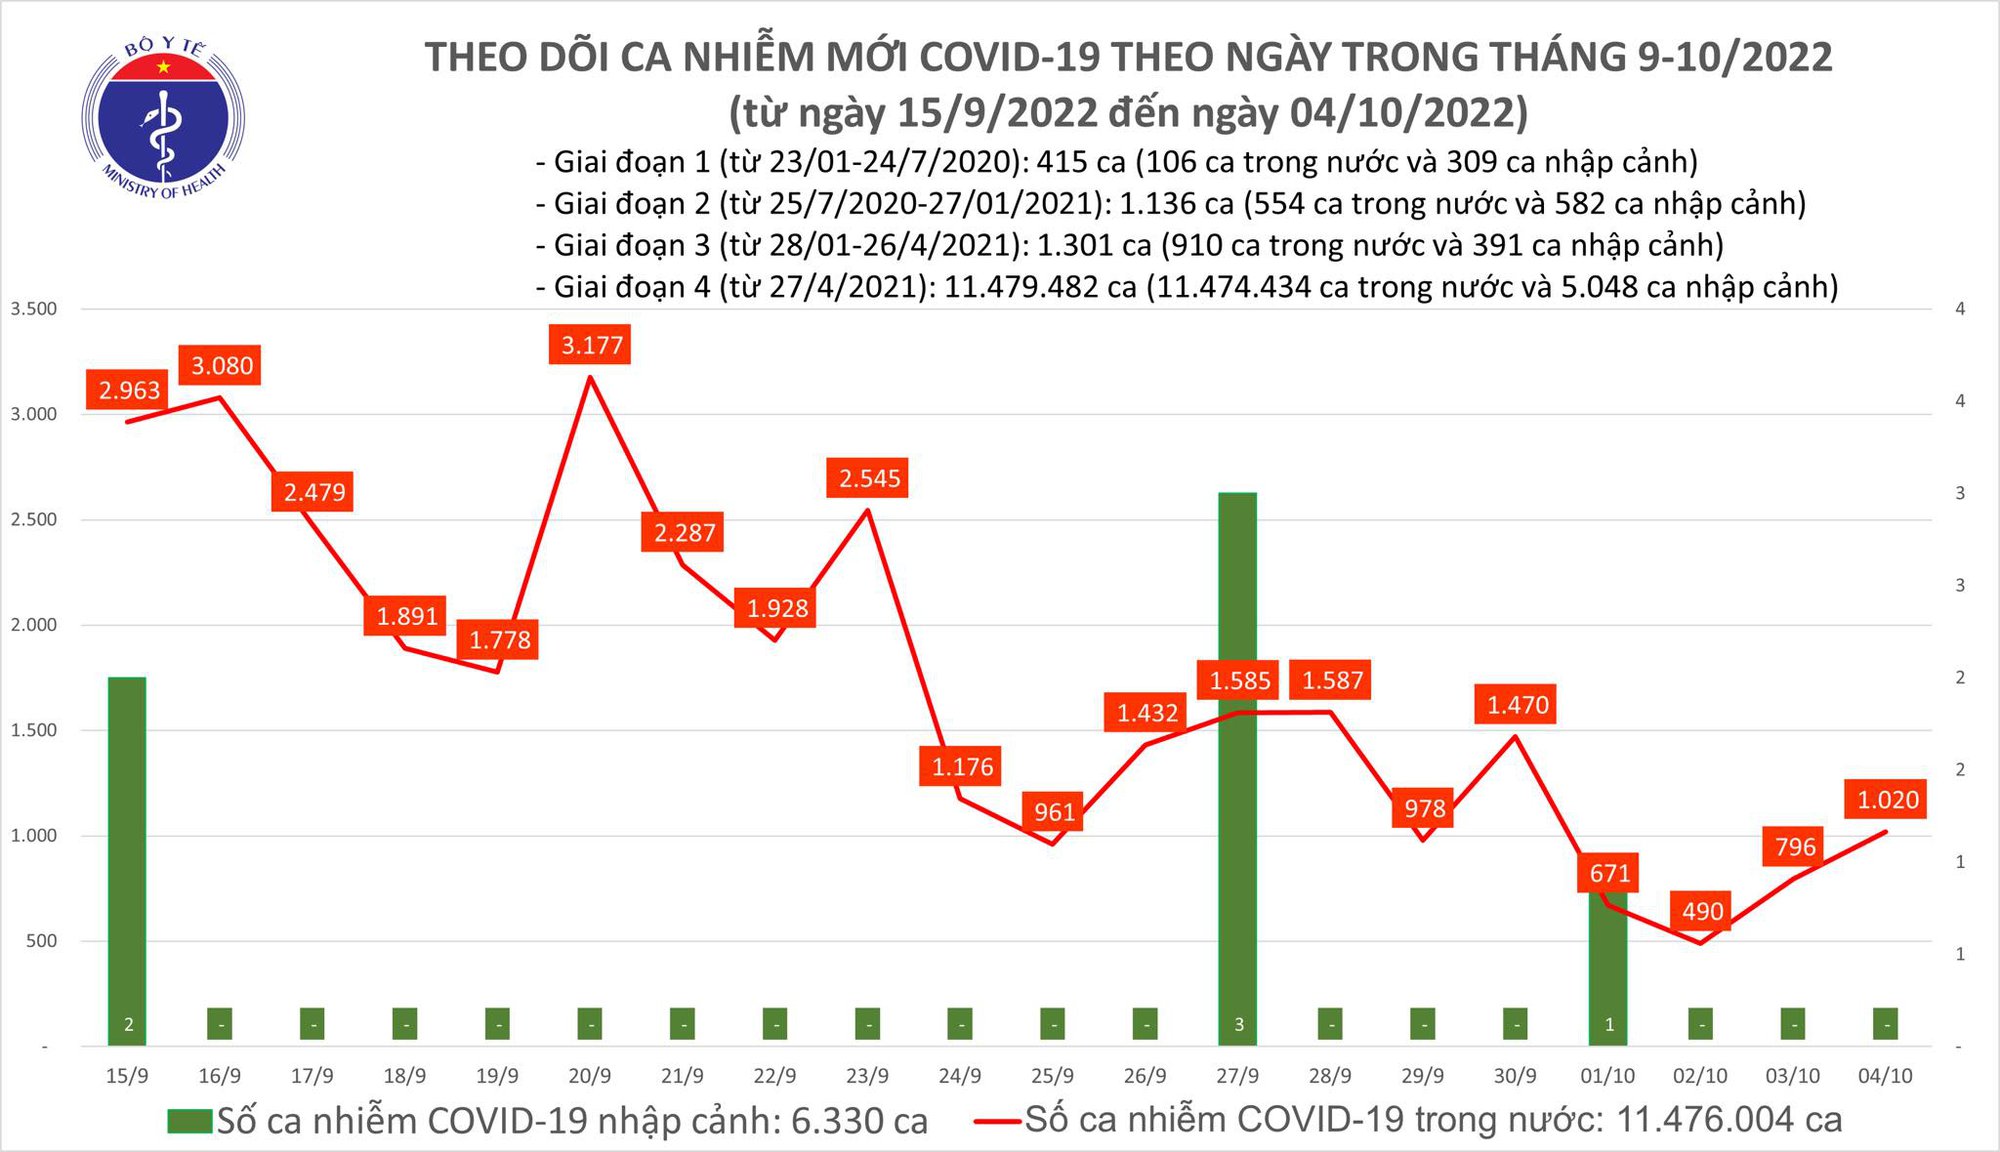 Ngày 4/10: Ca COVID-19 tăng lên 1.020; có 2 bệnh nhân ở Hà Nội và Bến Tre tử vong - Ảnh 1.